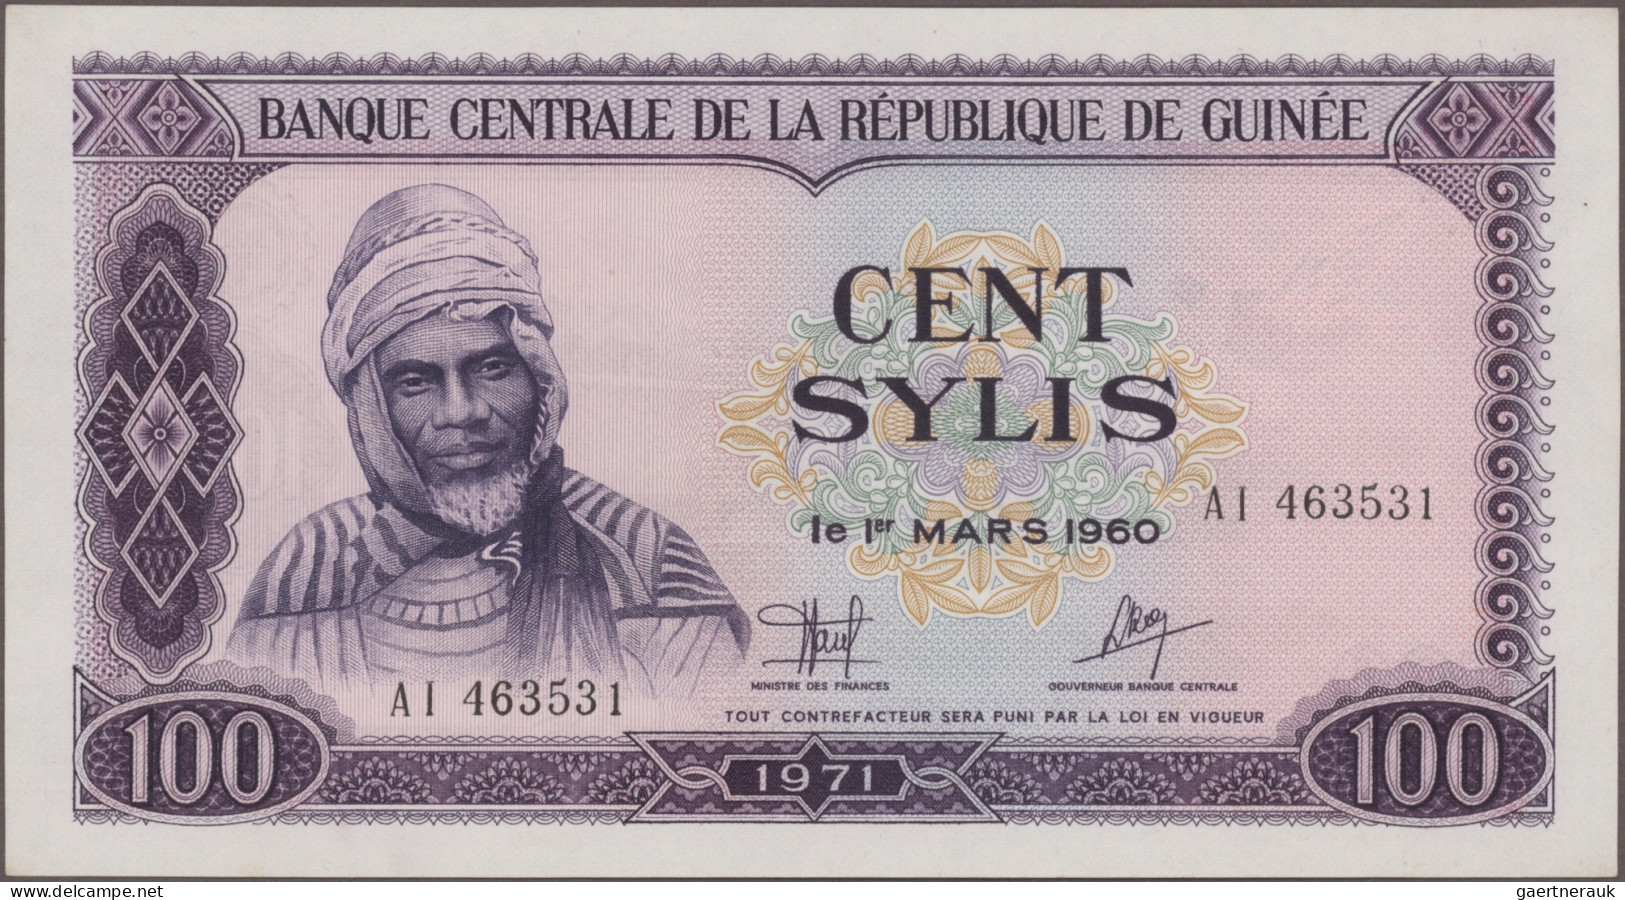 Guinea: Banque de la République de Guinée, huge lot with 30 banknotes, series 19